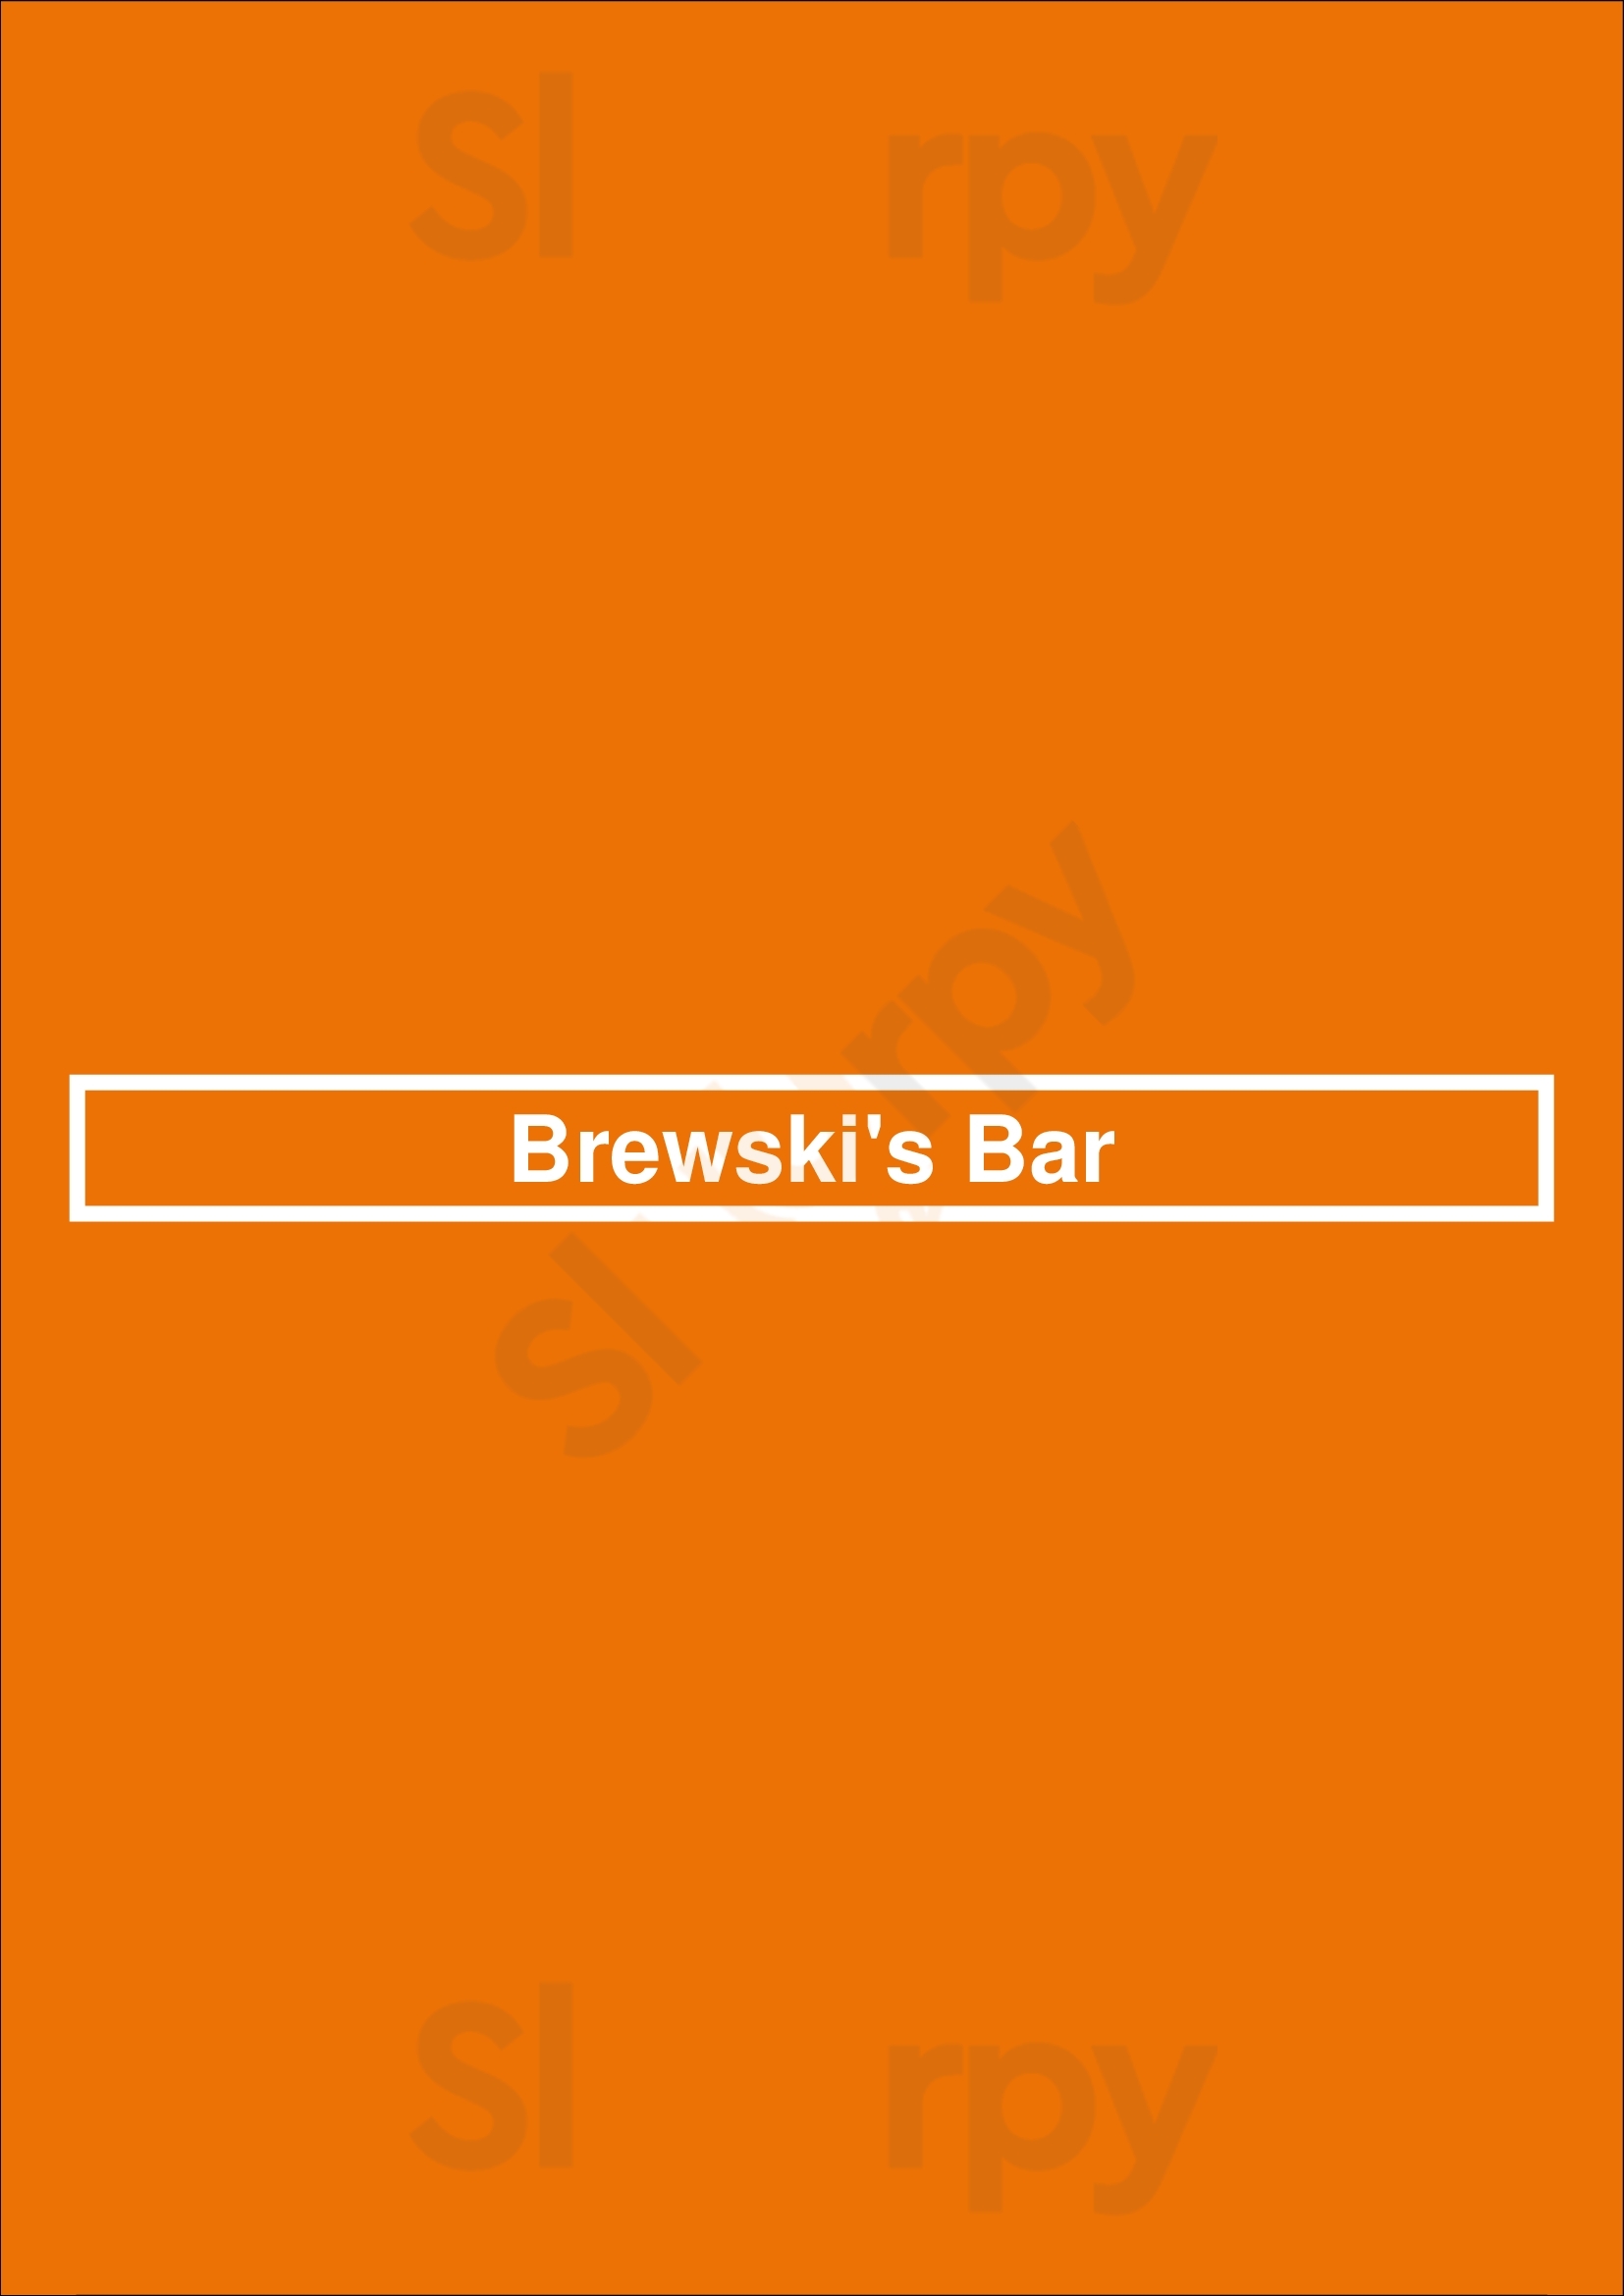 Brewski's Bar La Jolla Menu - 1